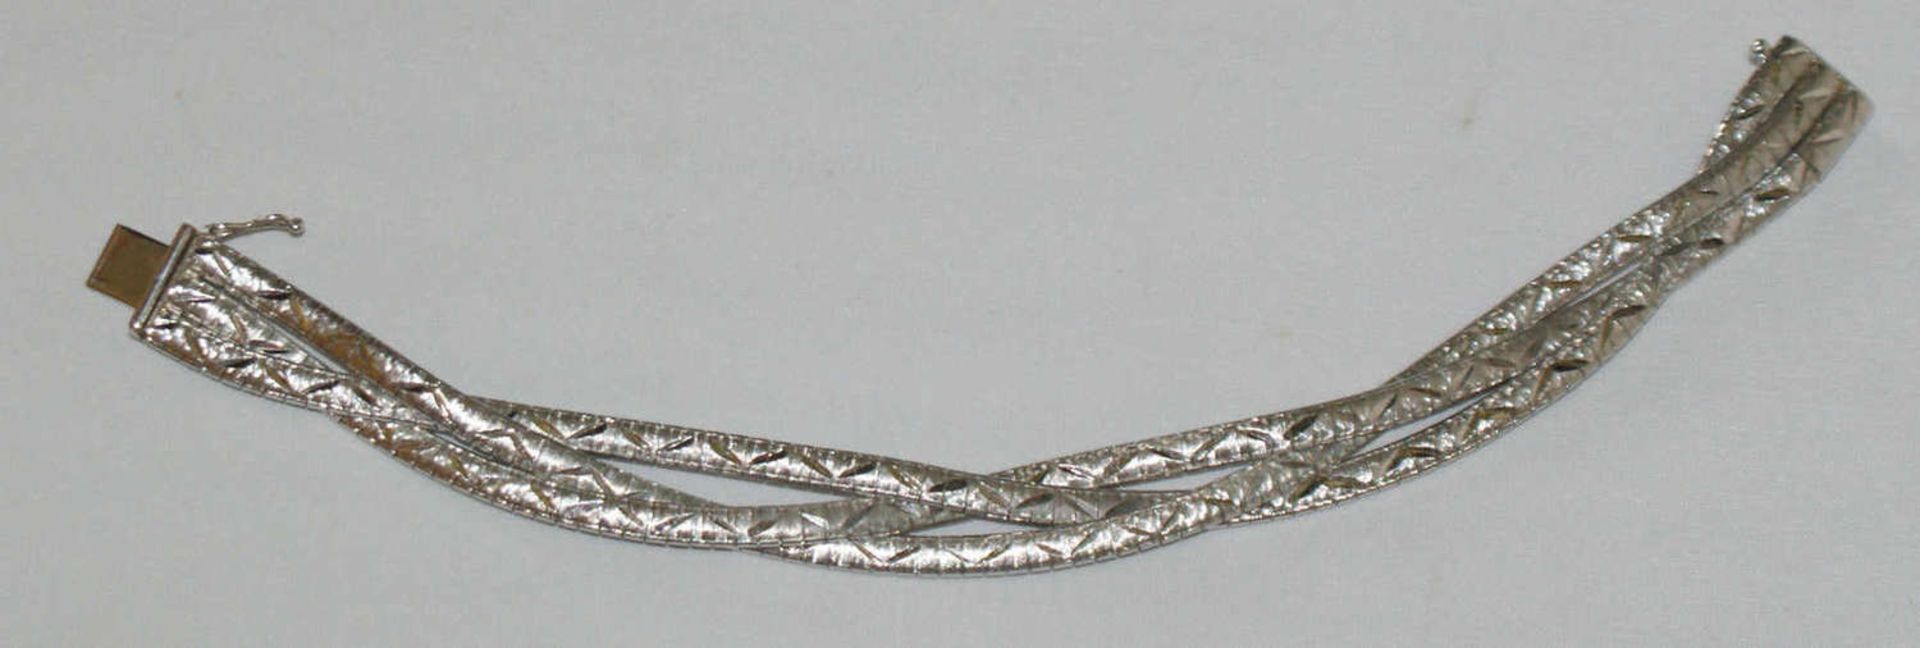 Armband, 835er Silber, 3-reihig, Länge ca. 20 cm, mit Sicherheitsverschluß. Gewicht ca. 23 gr